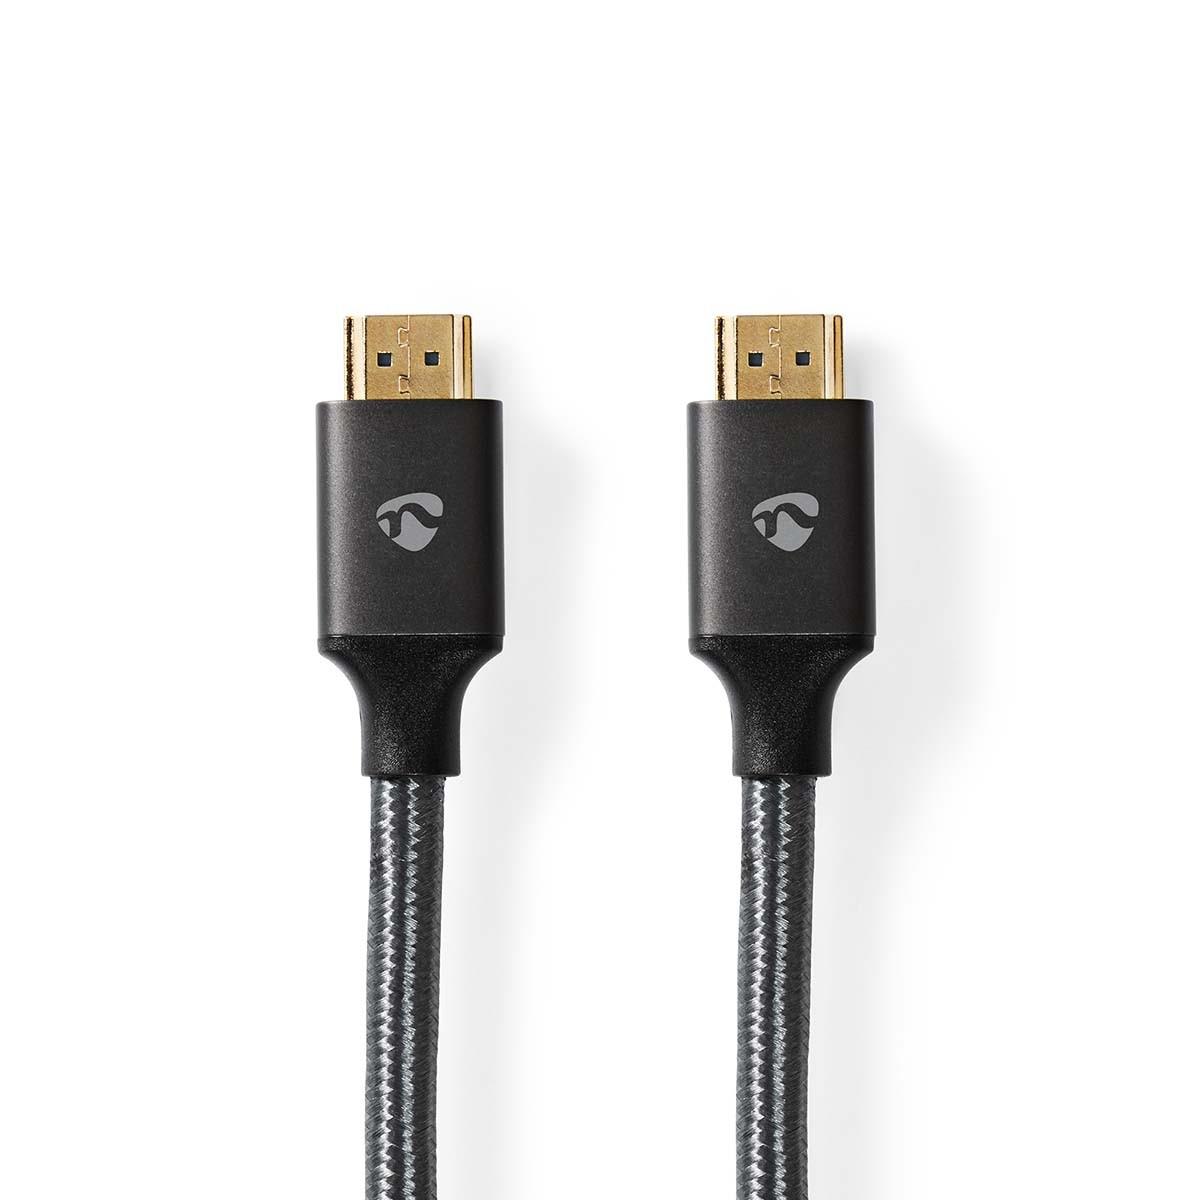 Nedis  Ultra High Speed HDMI™ Kabel | HDMI™ Stecker | HDMI™ Stecker | 8K@60Hz | 48 Gbps | 5,00 m | Rund | 6,7 mm | Grau mit Metall | Schlösser 